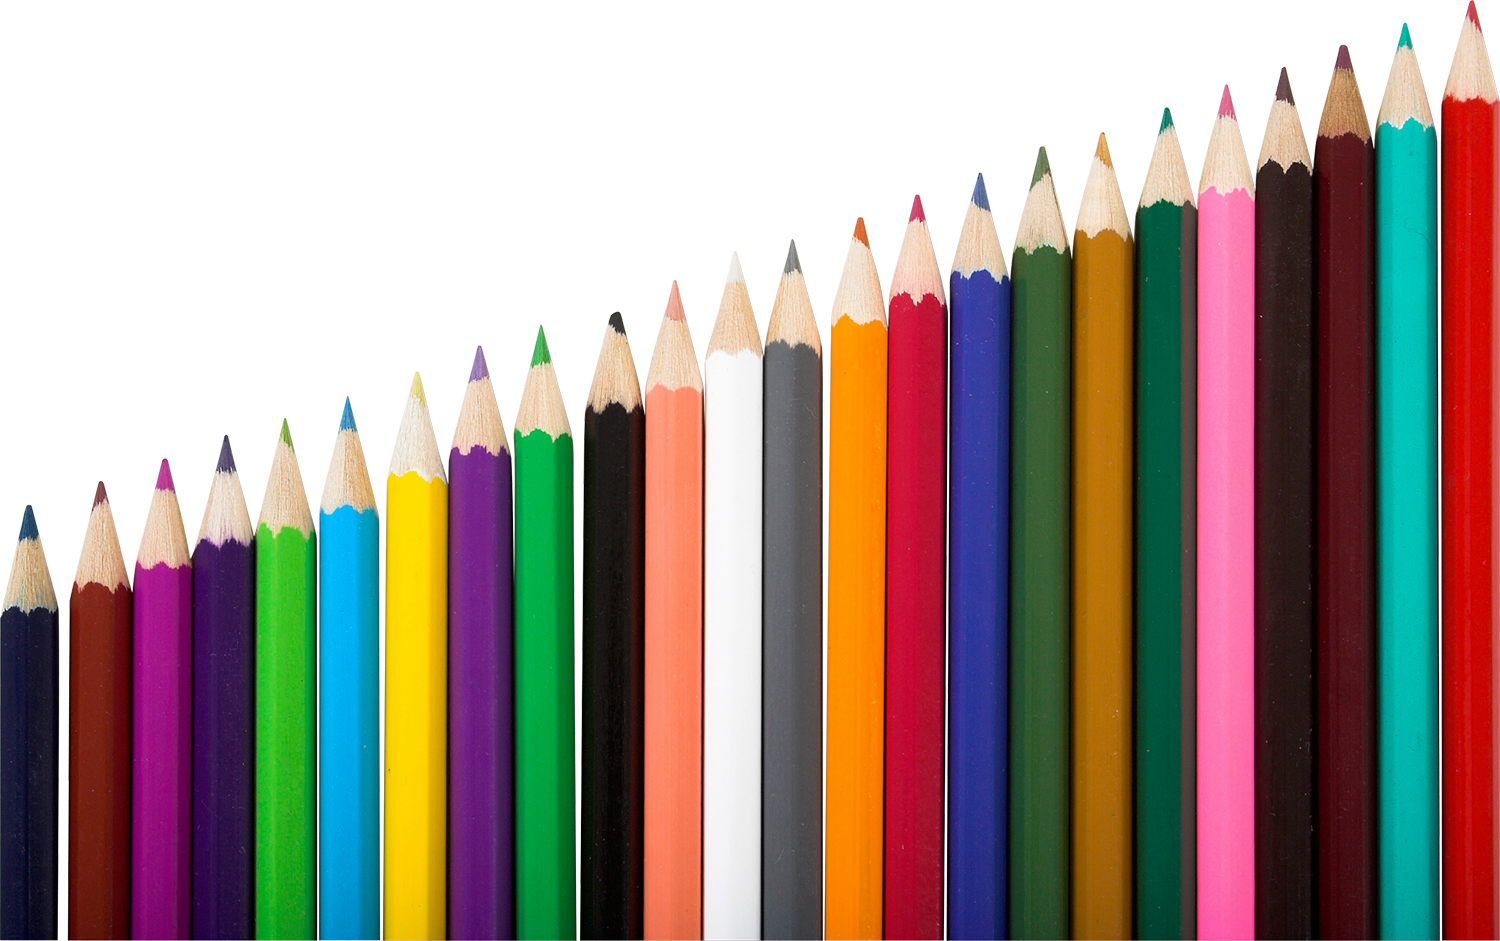 Названия цветов карандашей. Карандаши цветные. Карандаш на прозрачном фоне. Карандаш картинка для детей. Цветные карандаши на белом фоне.